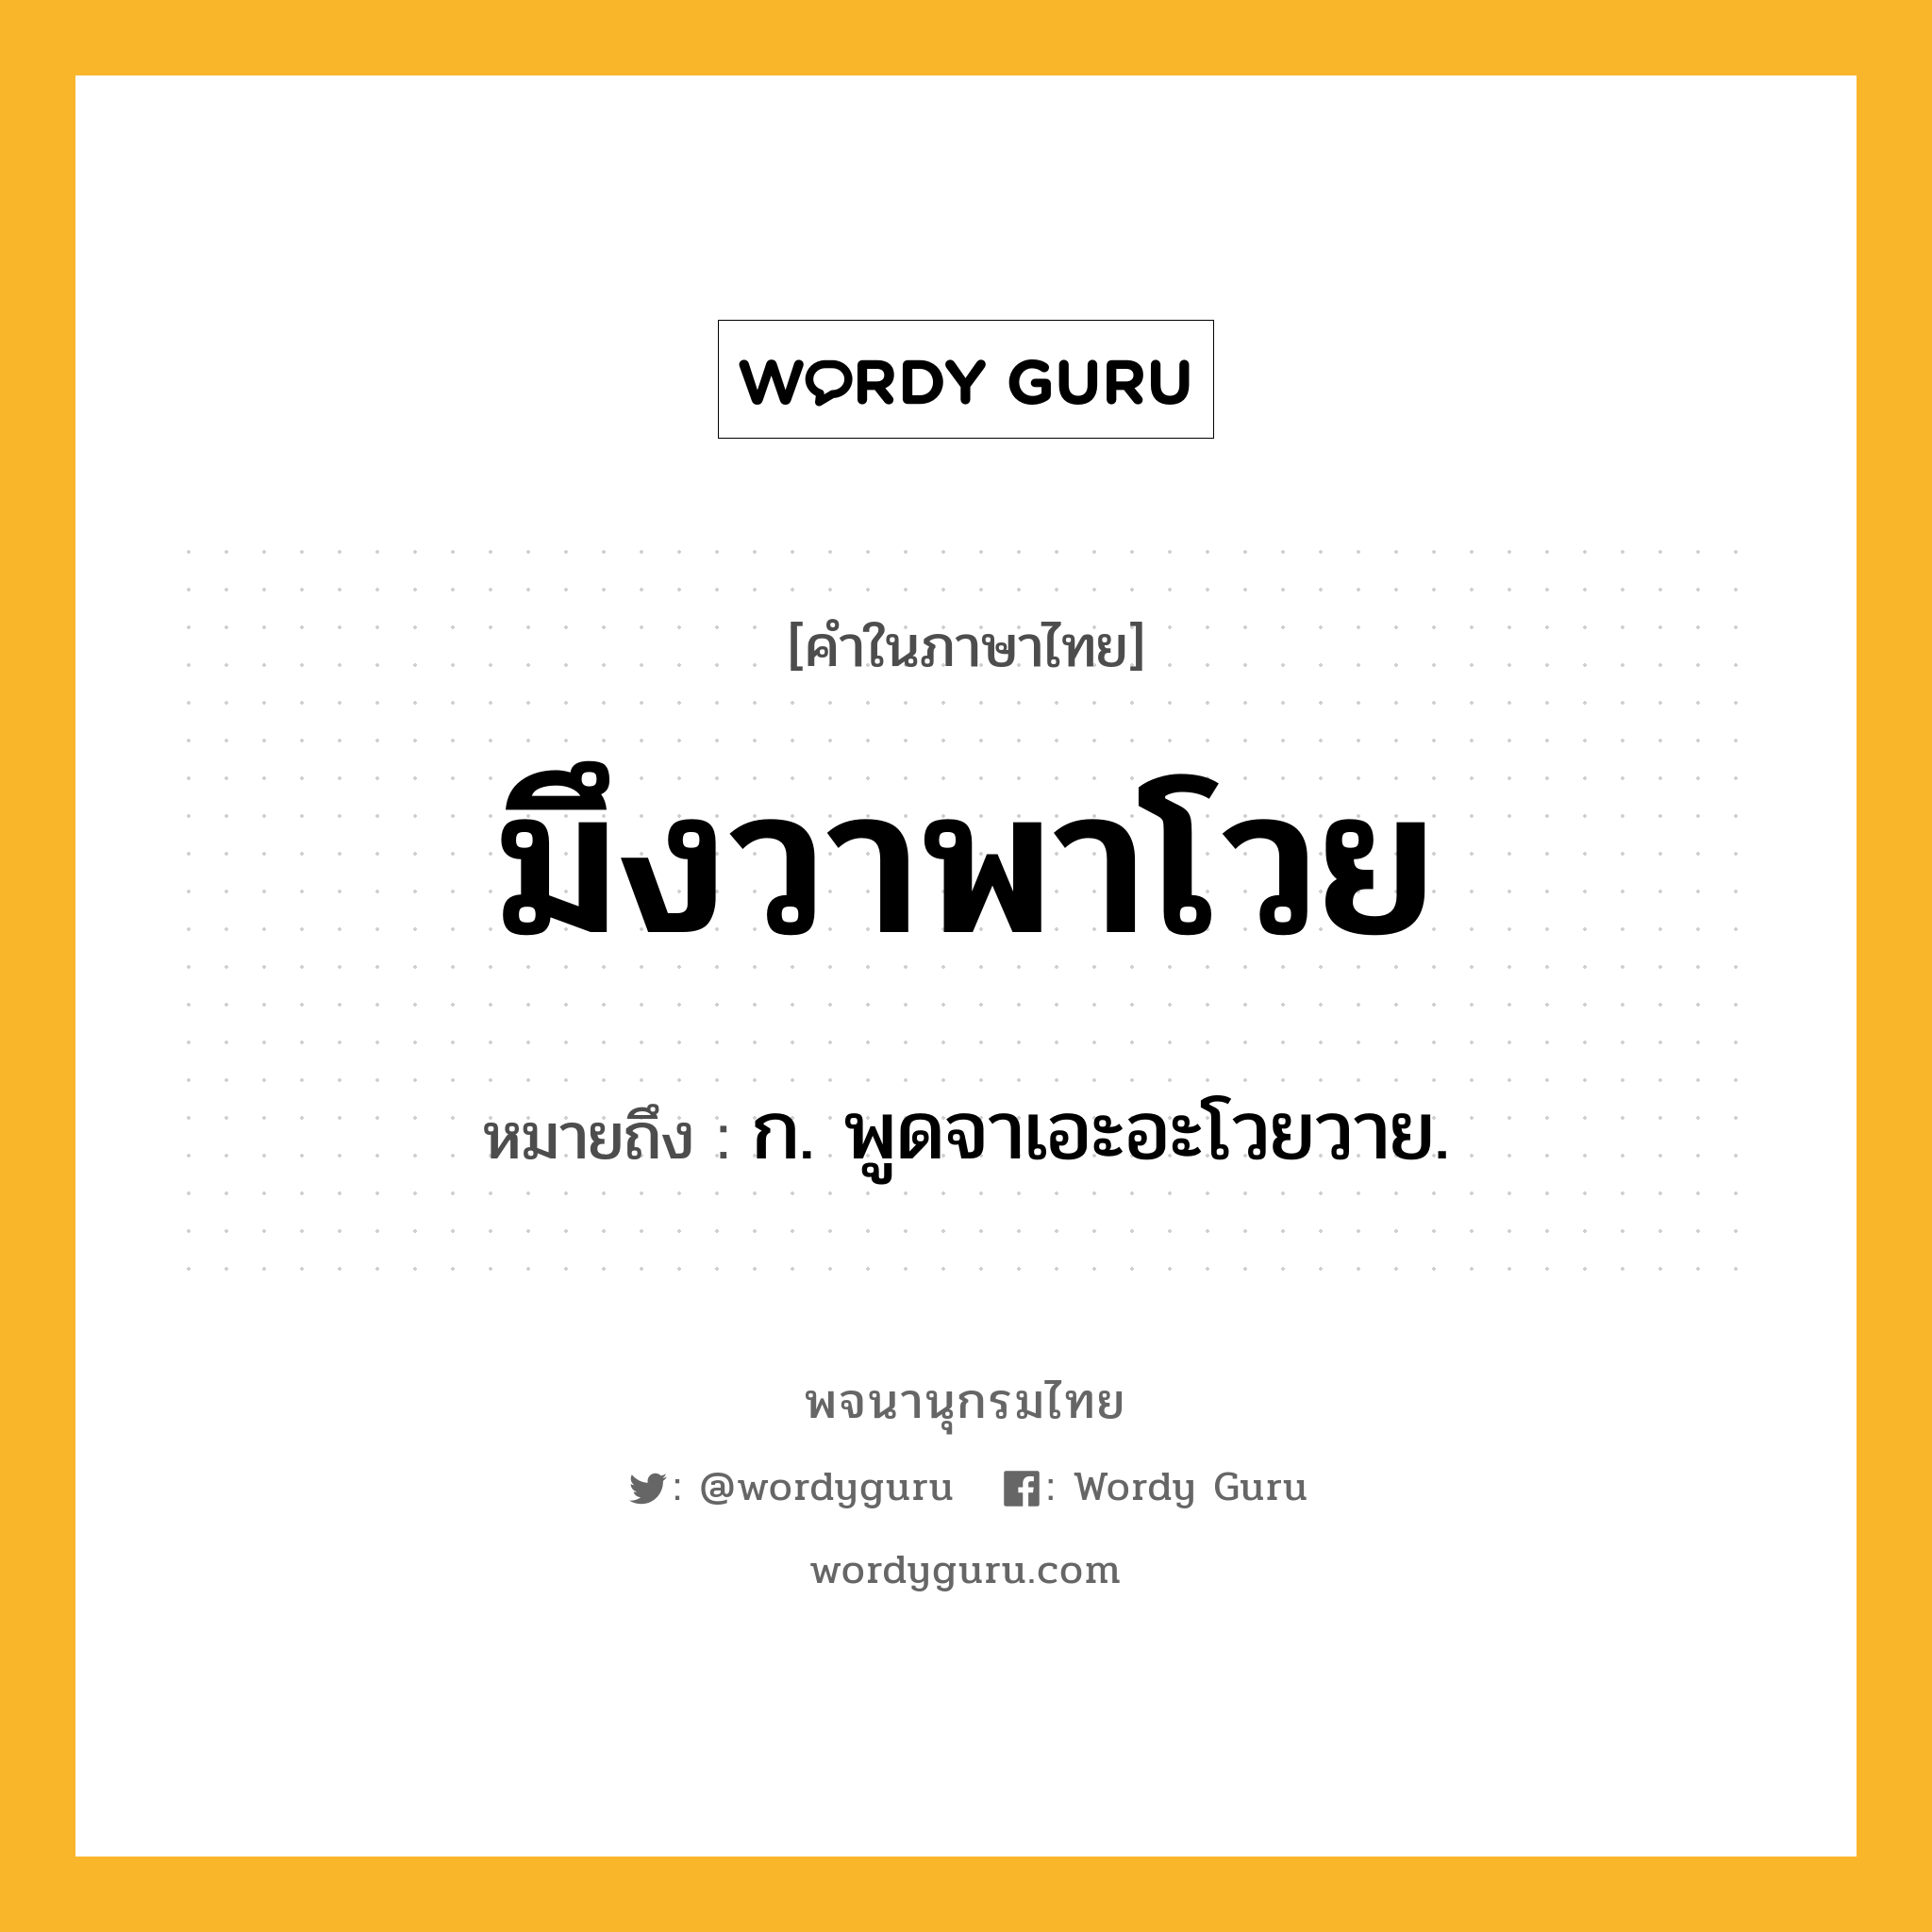 มึงวาพาโวย หมายถึงอะไร?, คำในภาษาไทย มึงวาพาโวย หมายถึง ก. พูดจาเอะอะโวยวาย.